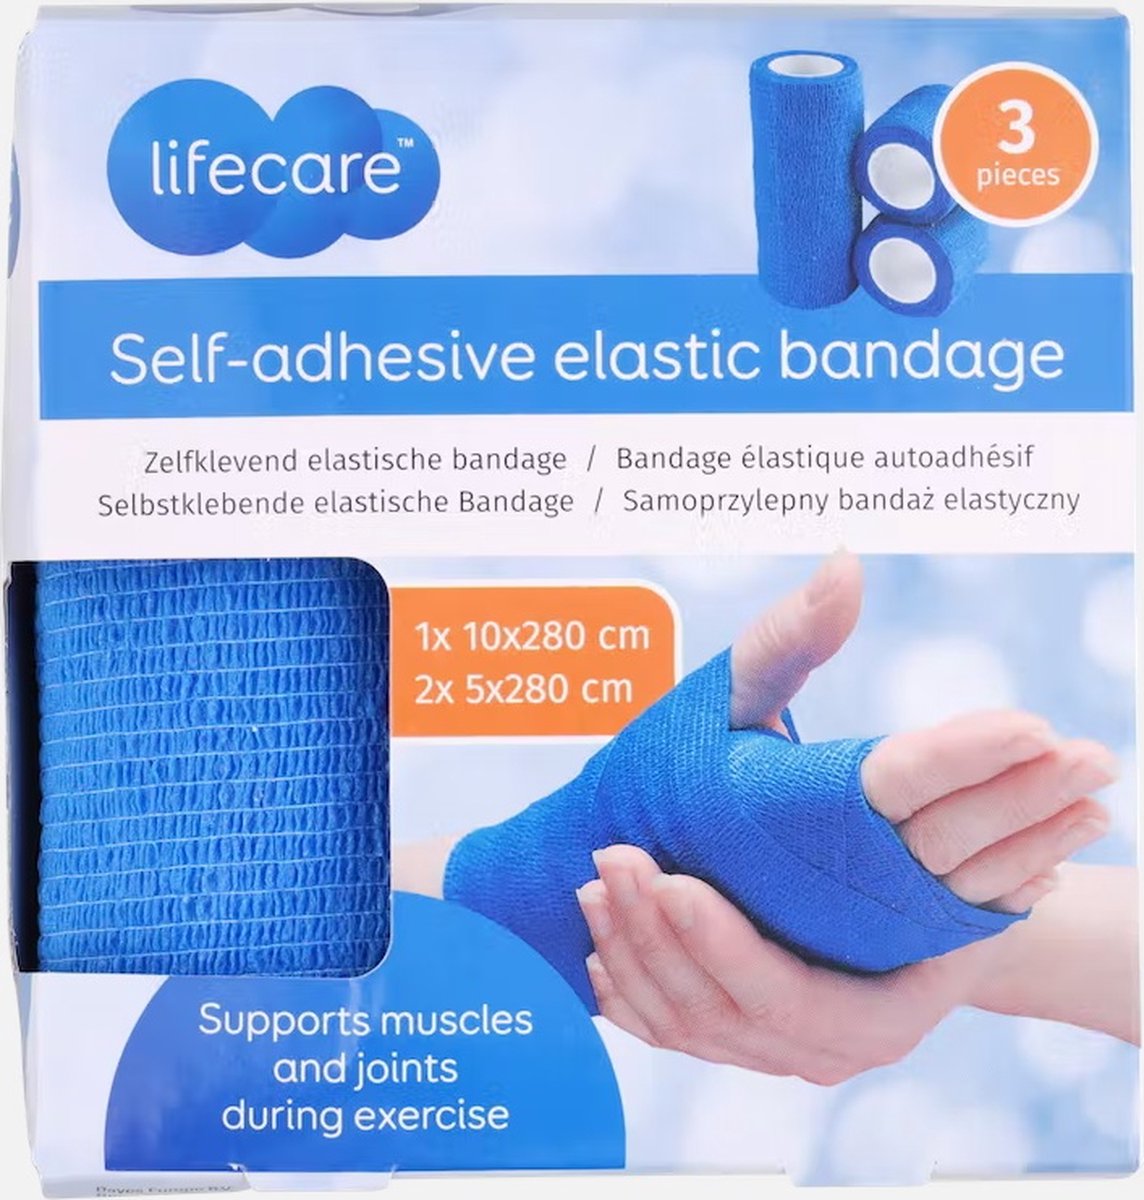 Zelfklevende elastische sportbandage 3 rollen (2x 5x280 cm en 1x 10x280 cm) - Lifecare